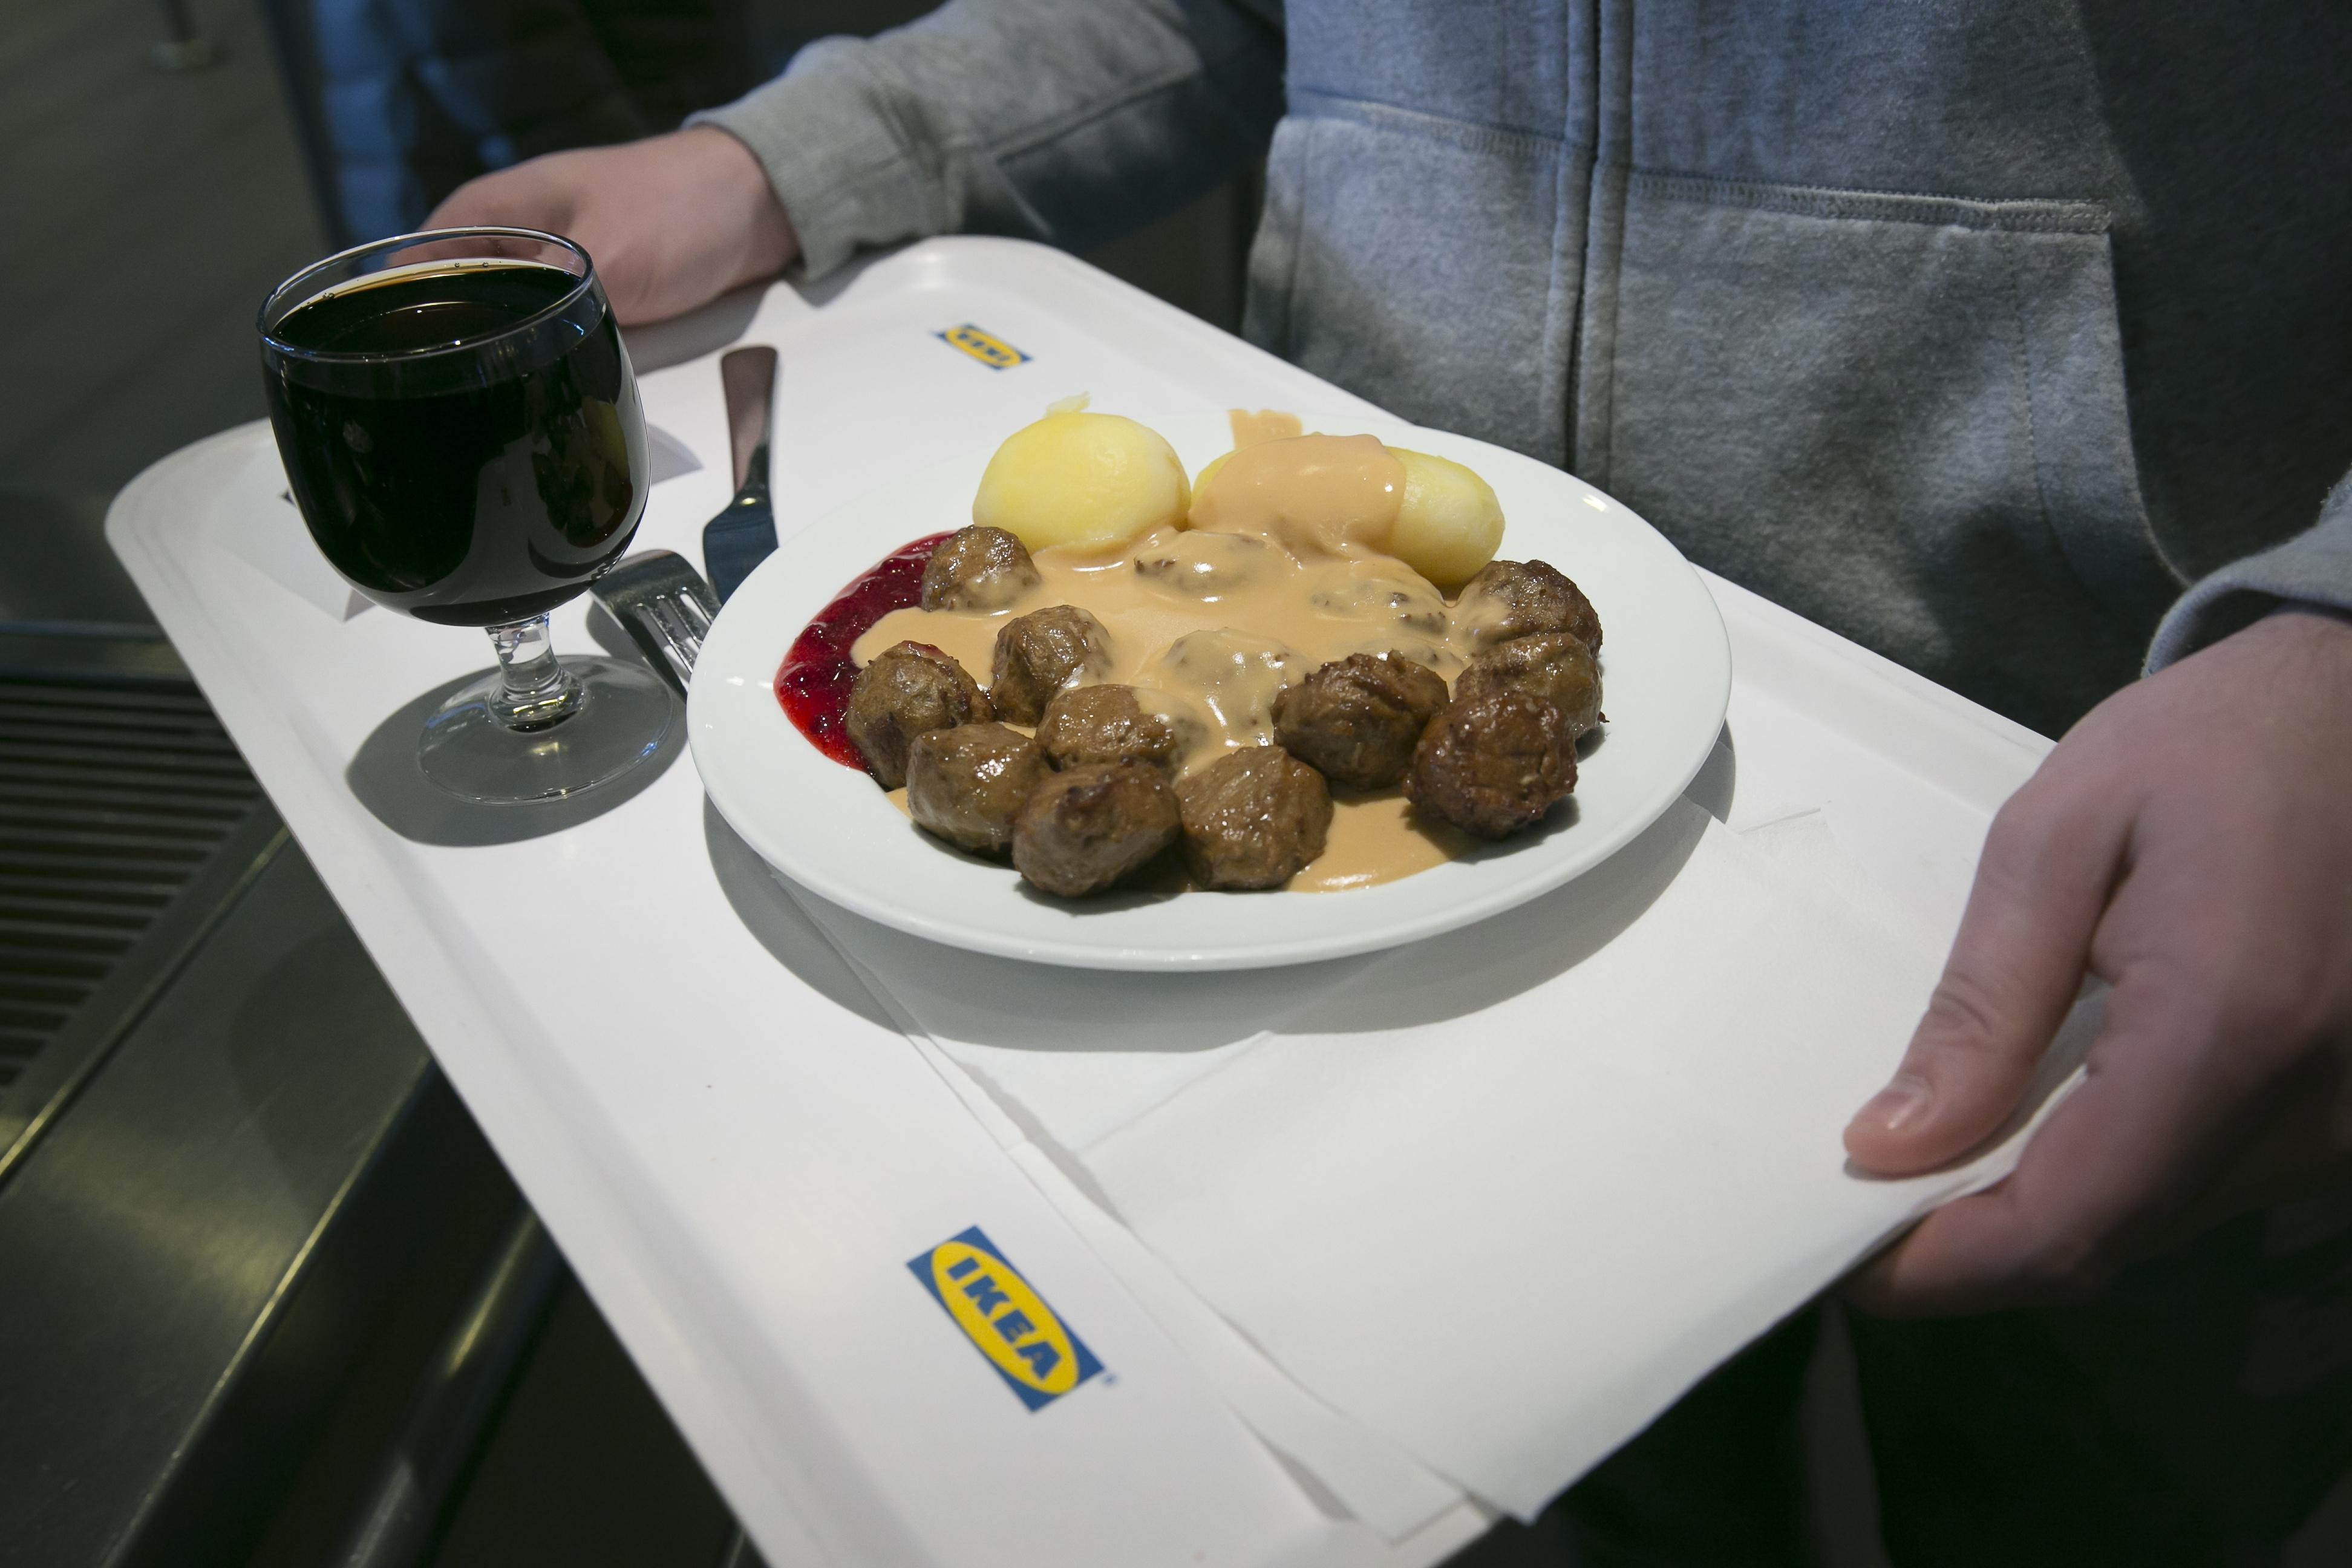 MÅL I SEG SELV: Hvis du har vært på Ikea og ikke spist kjøttbollene, har du i det hele tatt vært der?